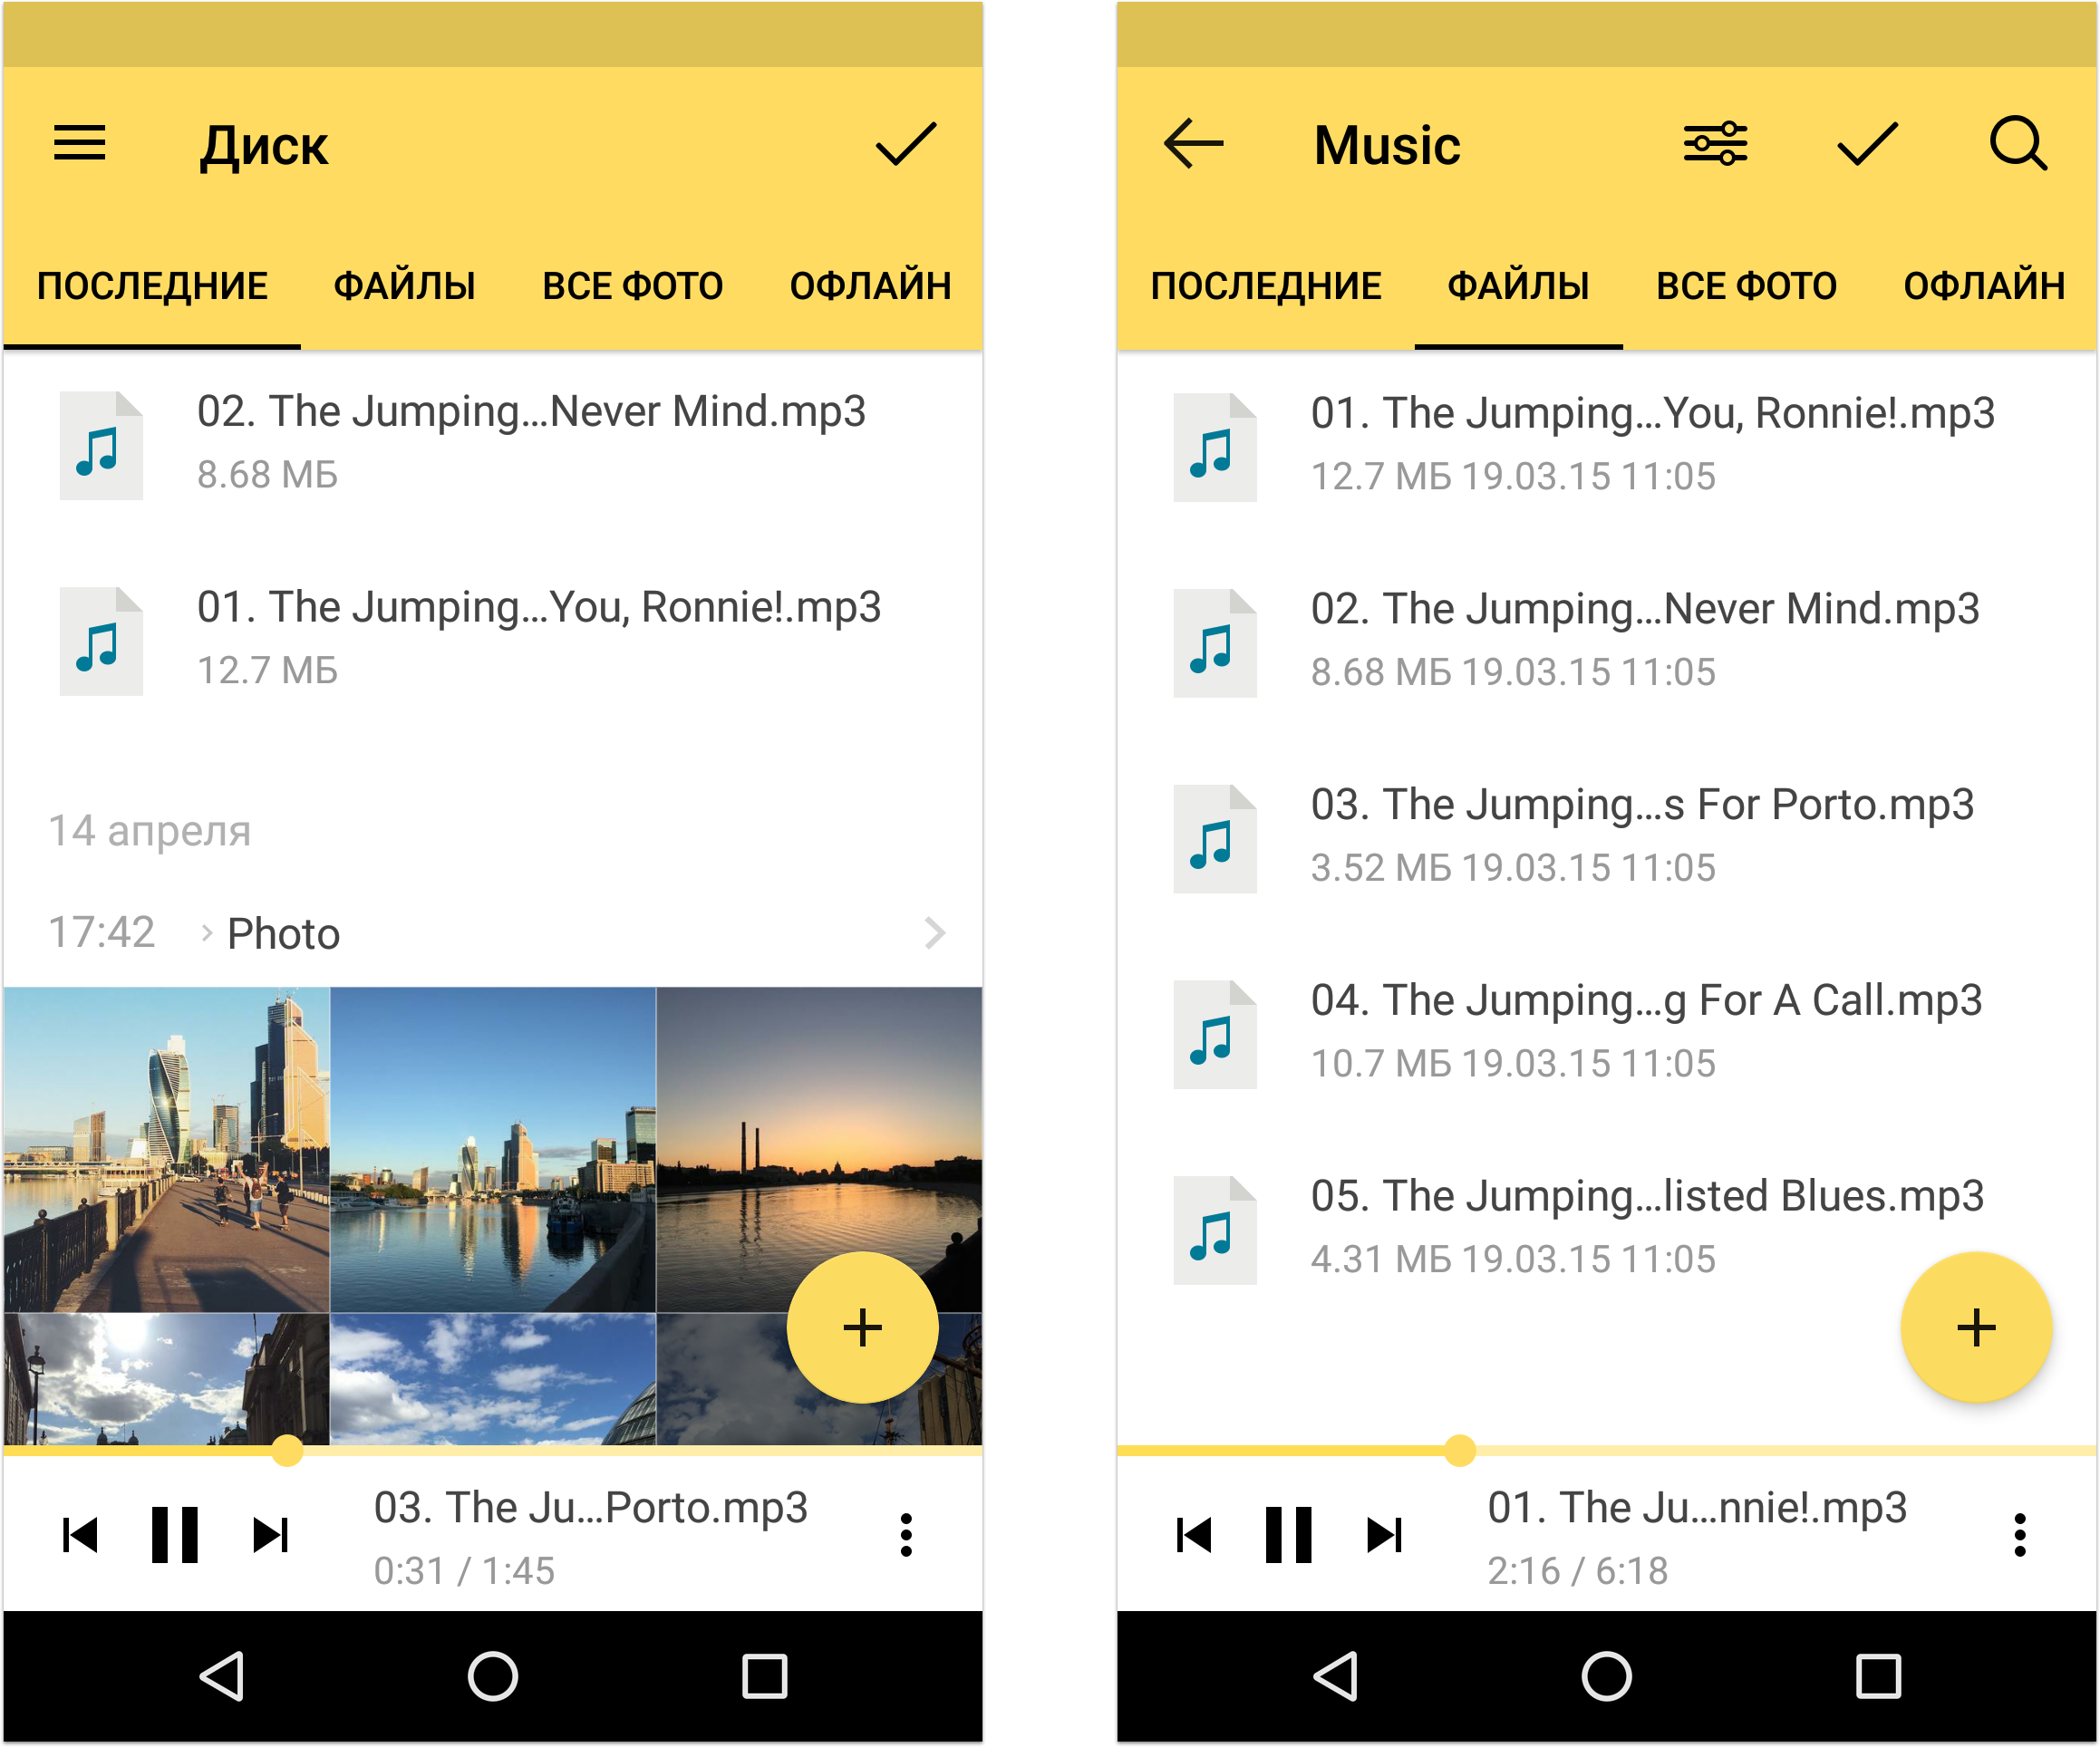 Раді вам повідомити, що в новій версії Диска для Android з'явився вбудований аудіоплеєр, який вміє відтворювати ваші улюблені аудіо-треки, подкасти та аудіо-книги з хмари прямо в додатку